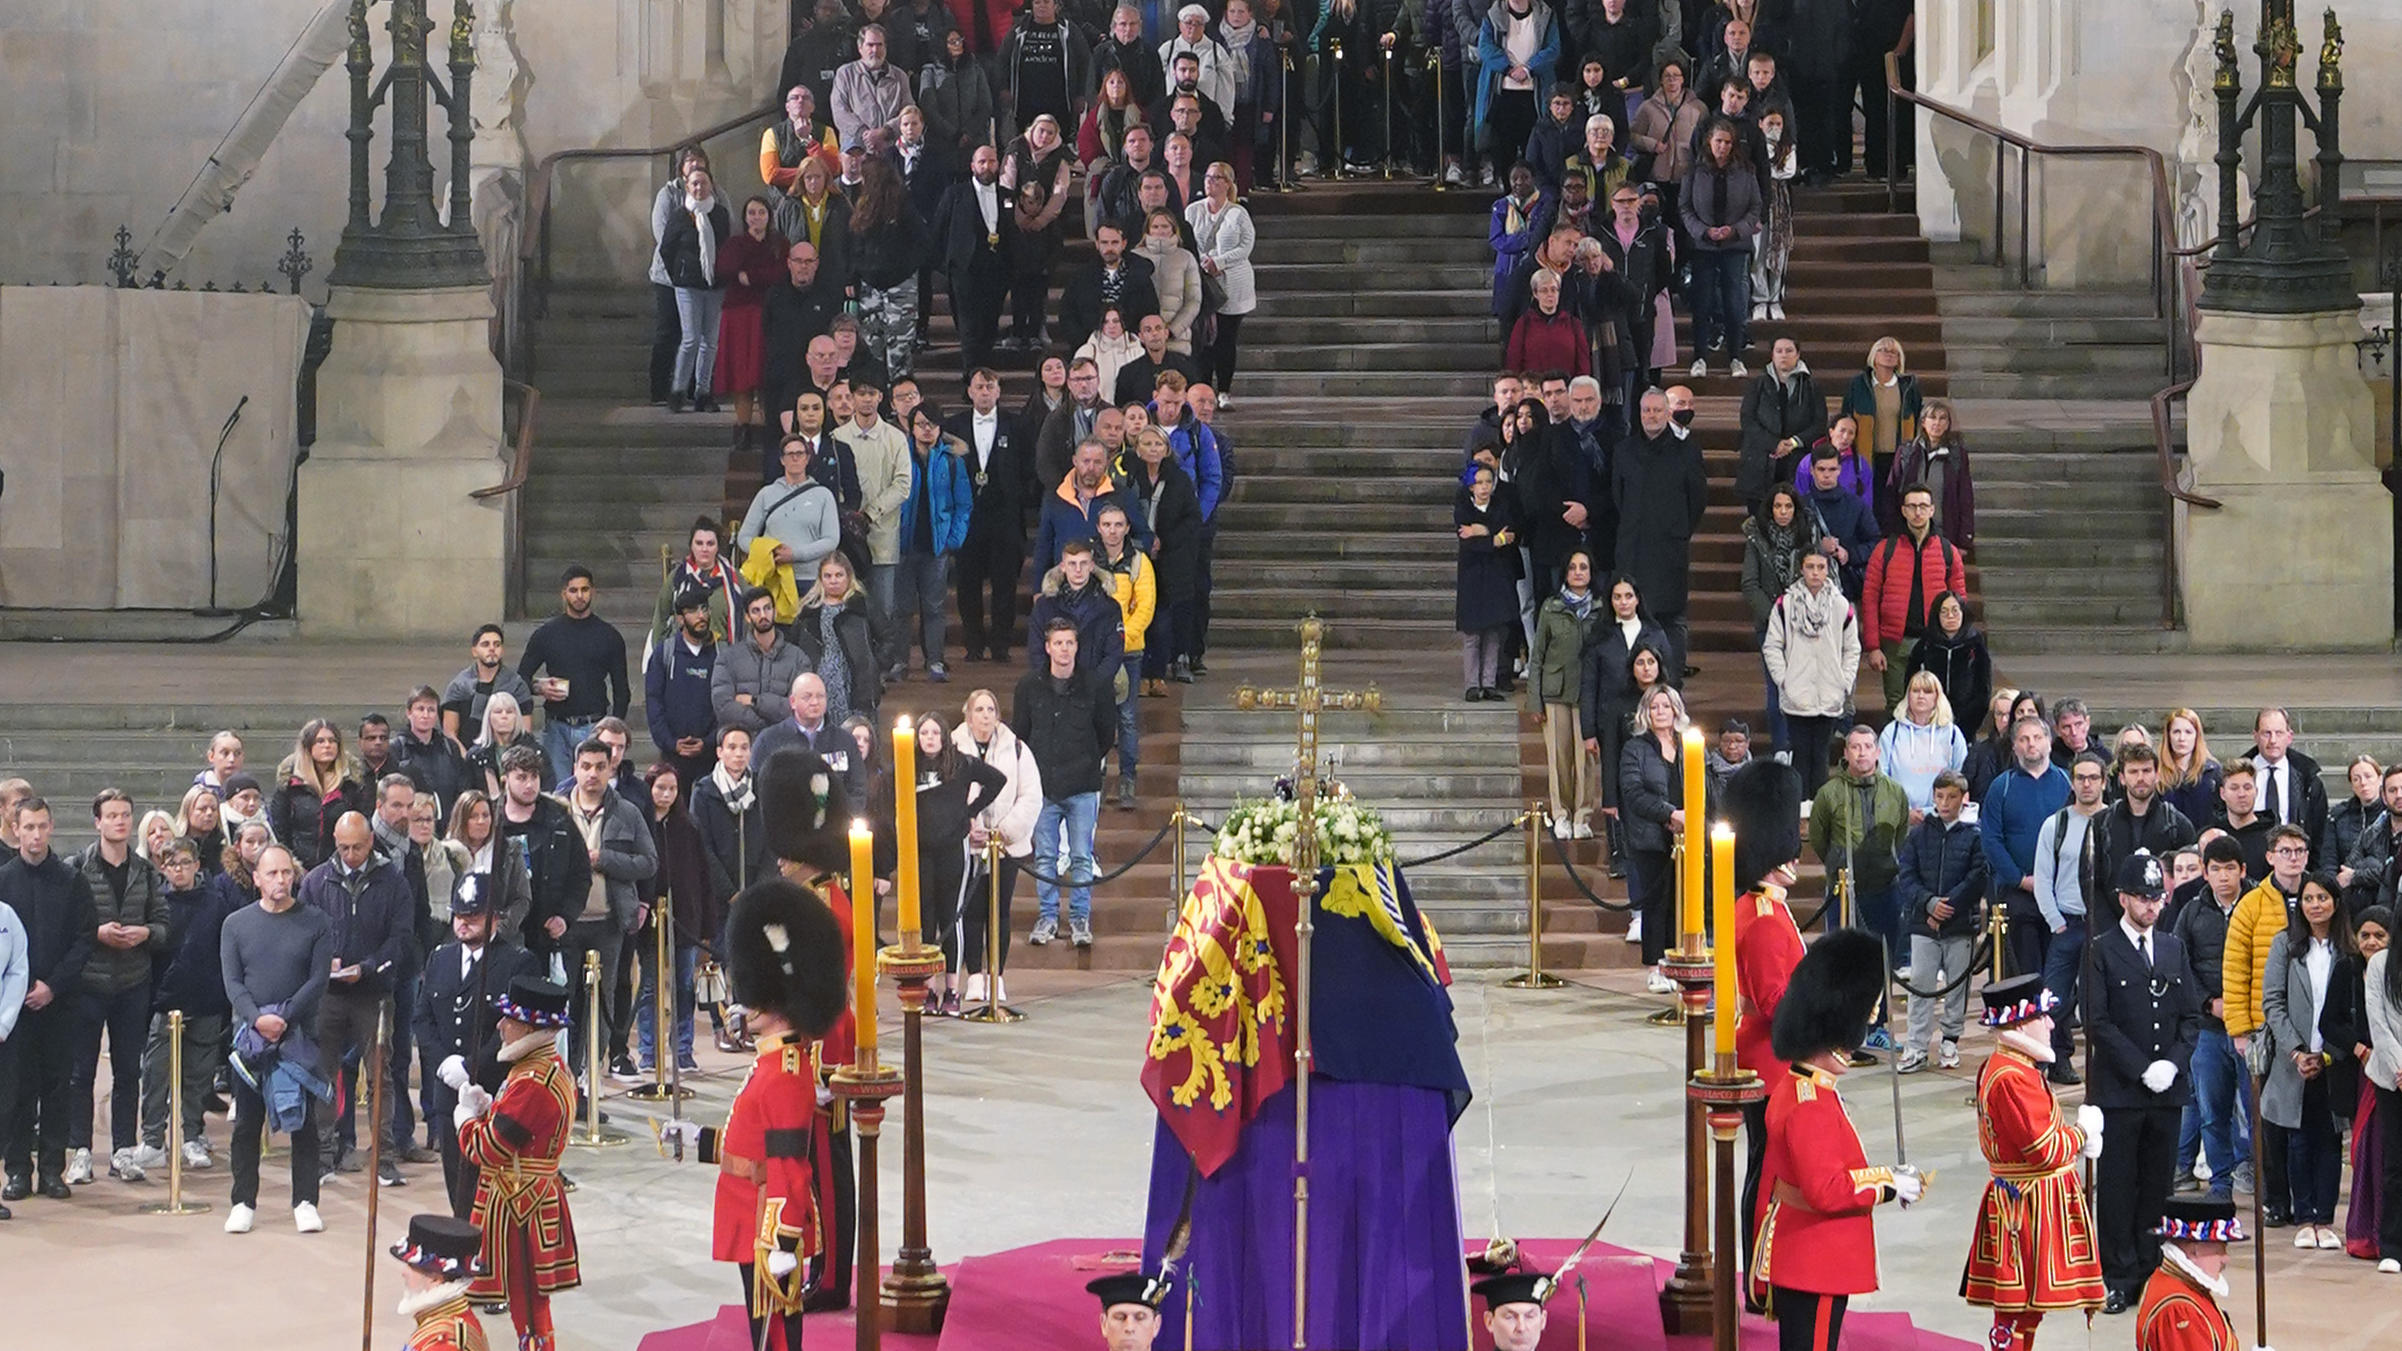 Nach offiziellen Angaben haben 250.000 Menschen der Queen in der Westminster Hall ihre Aufwartung gemacht.